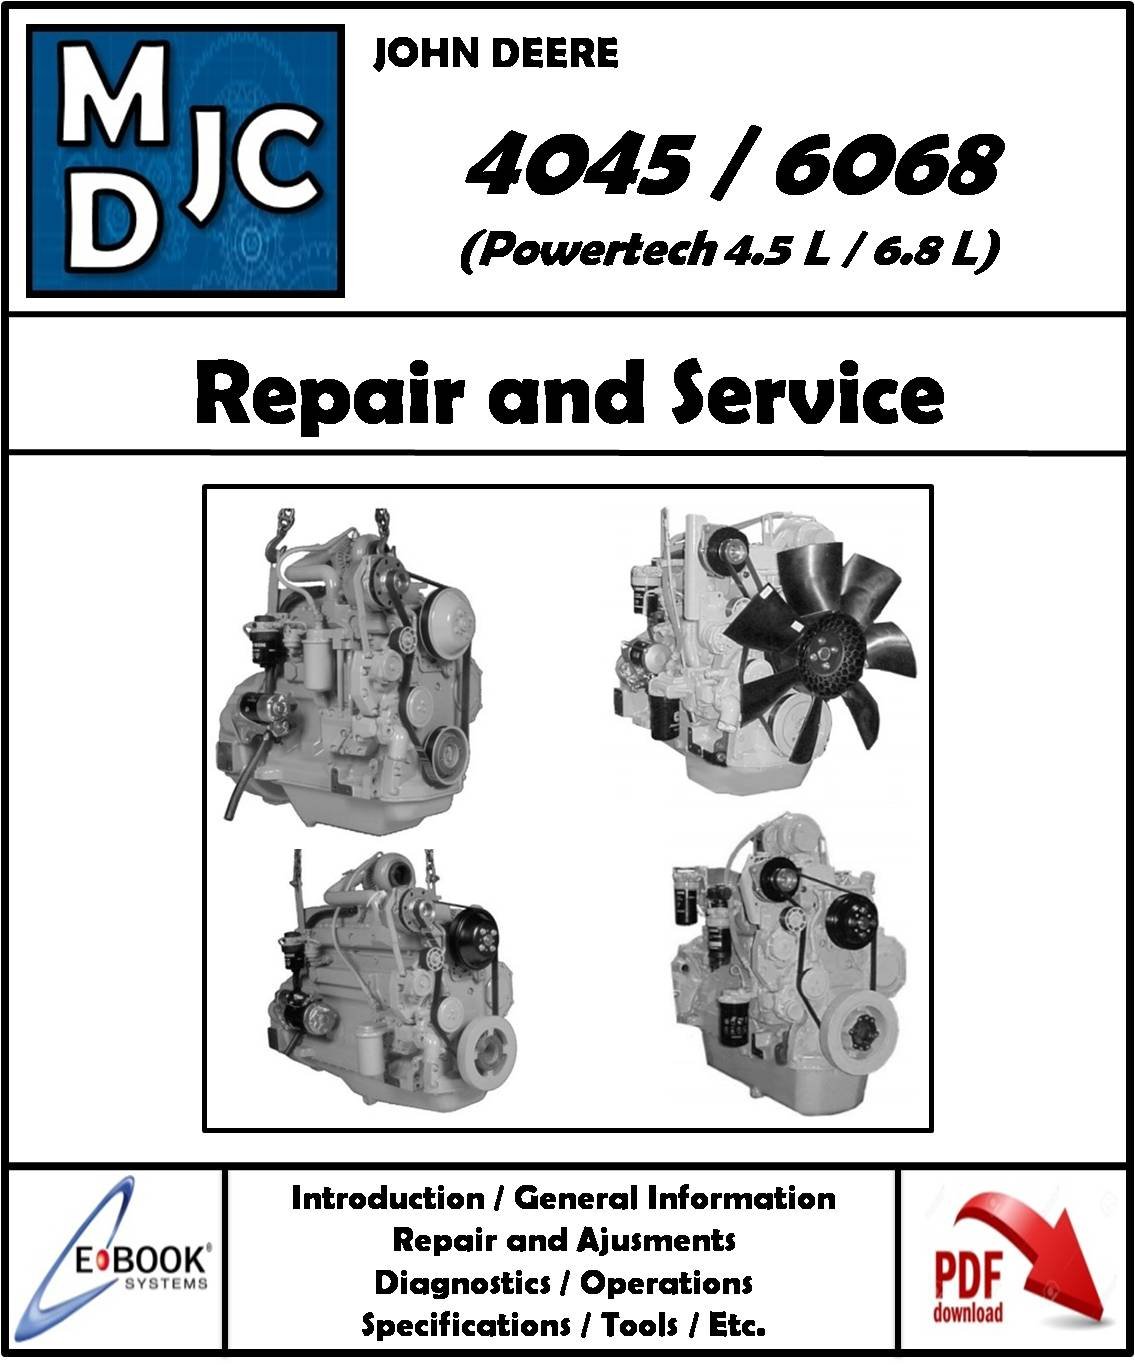 John Deere 4045 // 6068 Motores Powertech 4.5 L / 6.8 L